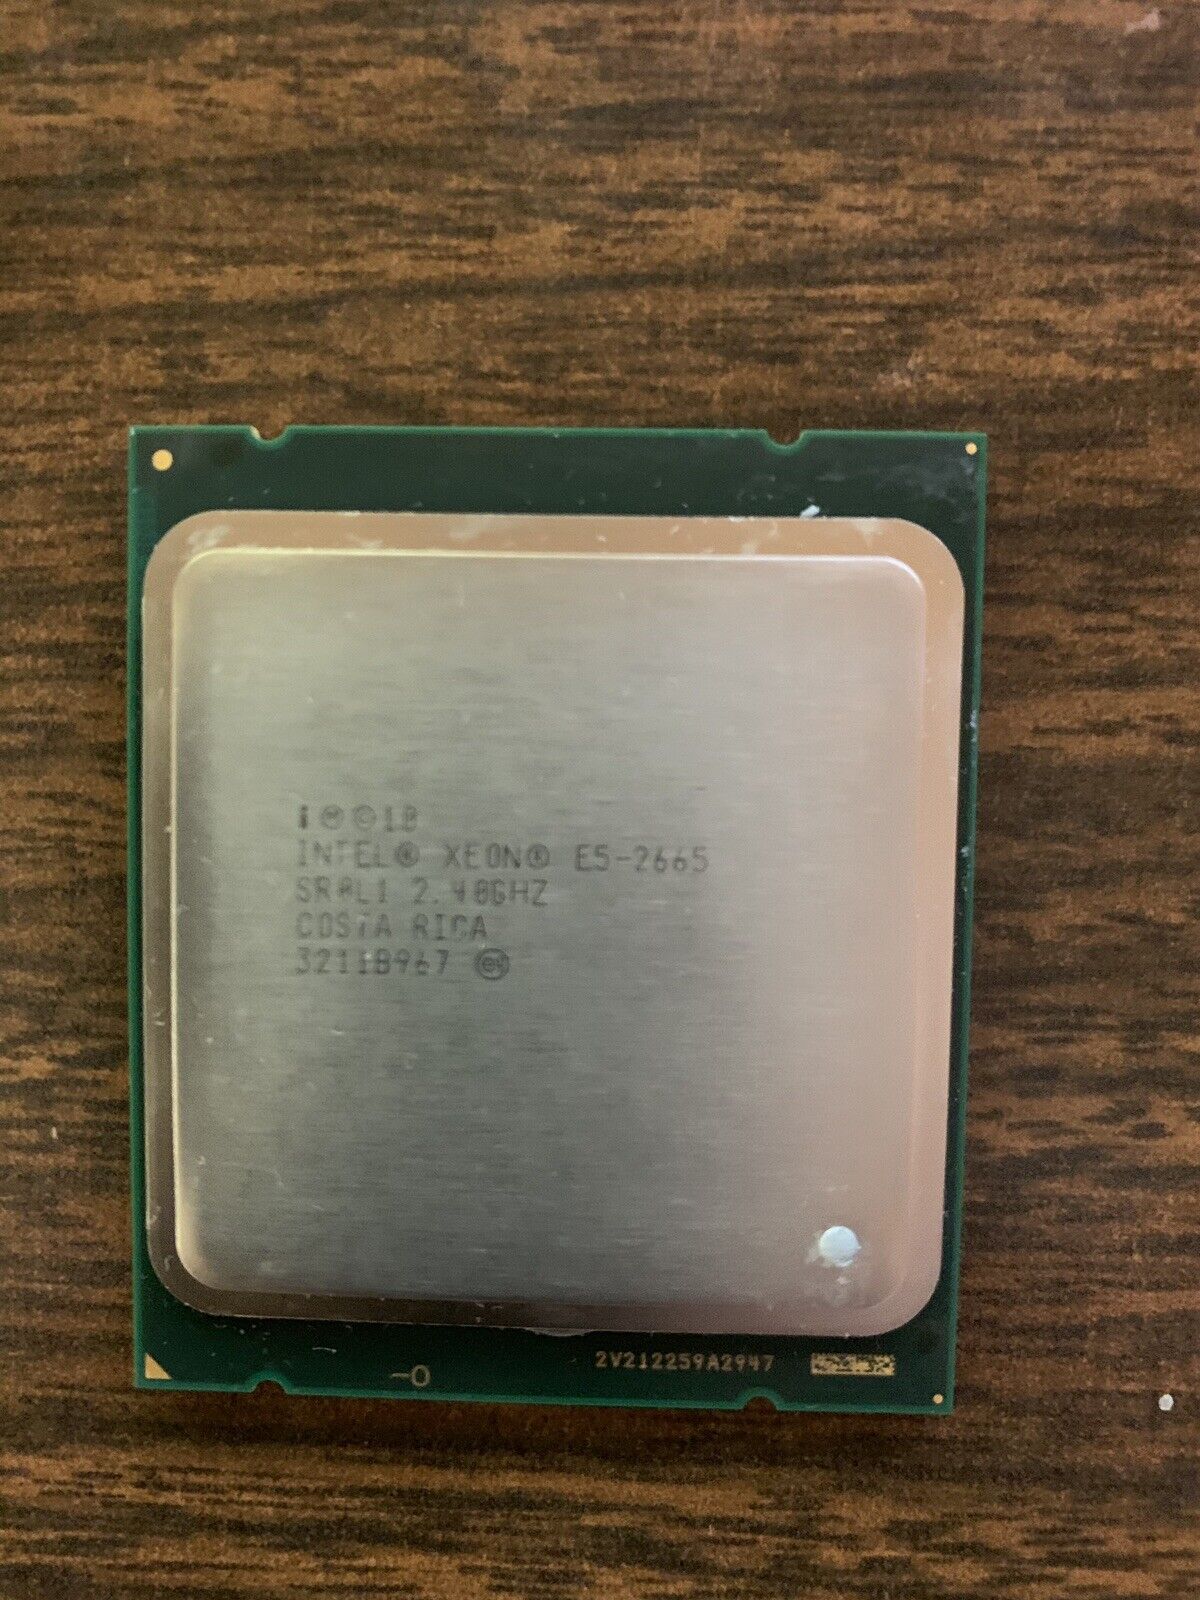 Intel Xeon E5-2665 2.4GHz SR0L1 Processor